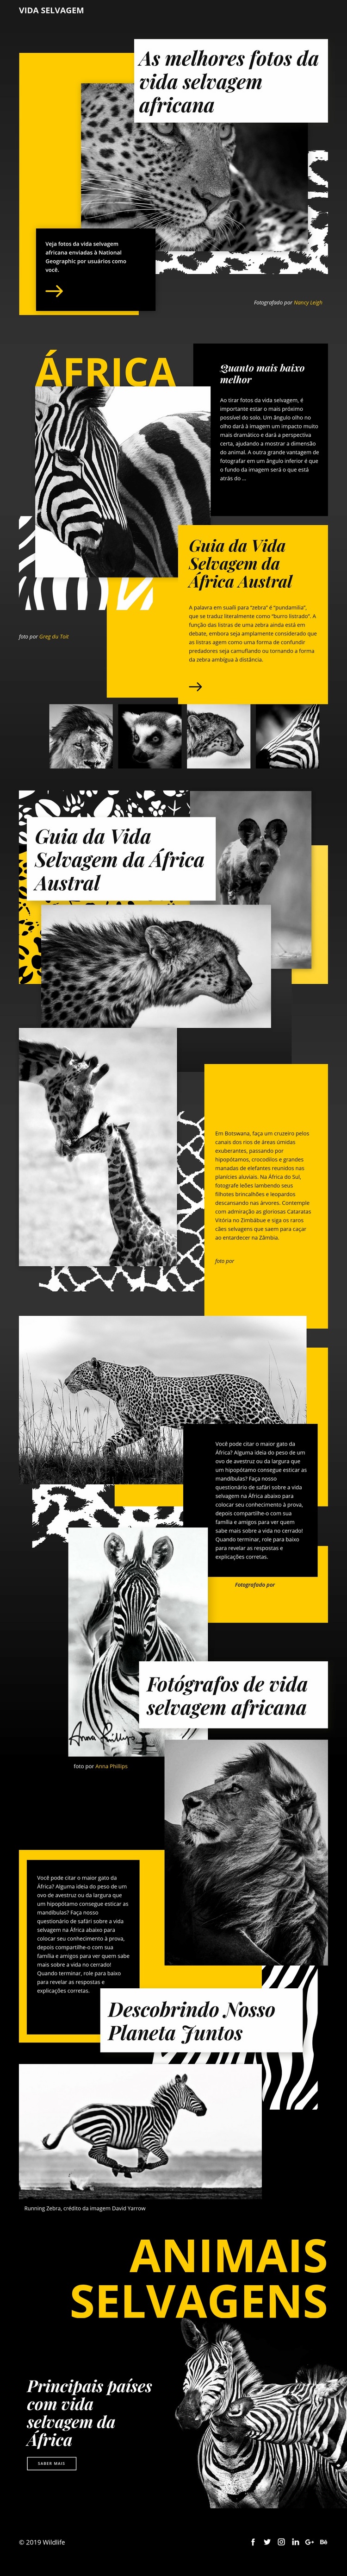 Fotos de animais selvagens Design do site